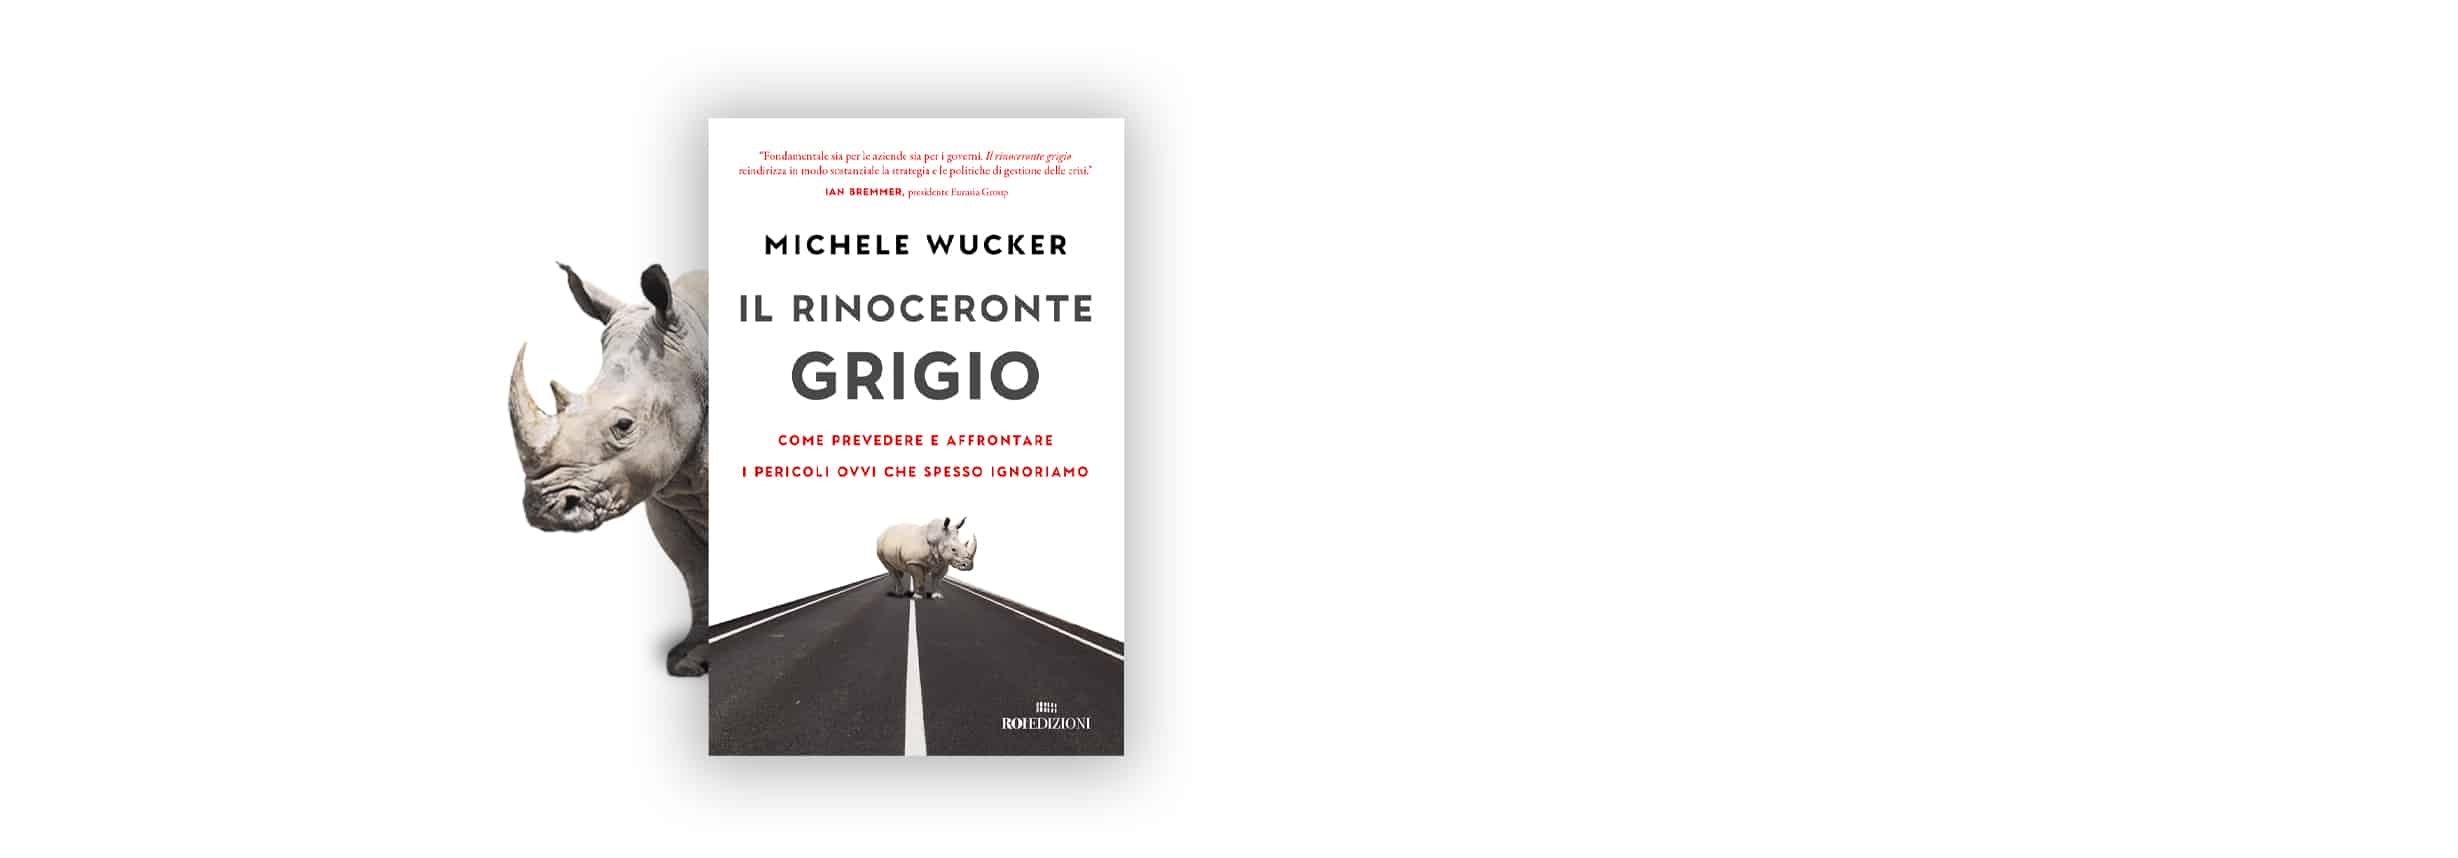 Il rinoceronte grigio, Michele Wucker